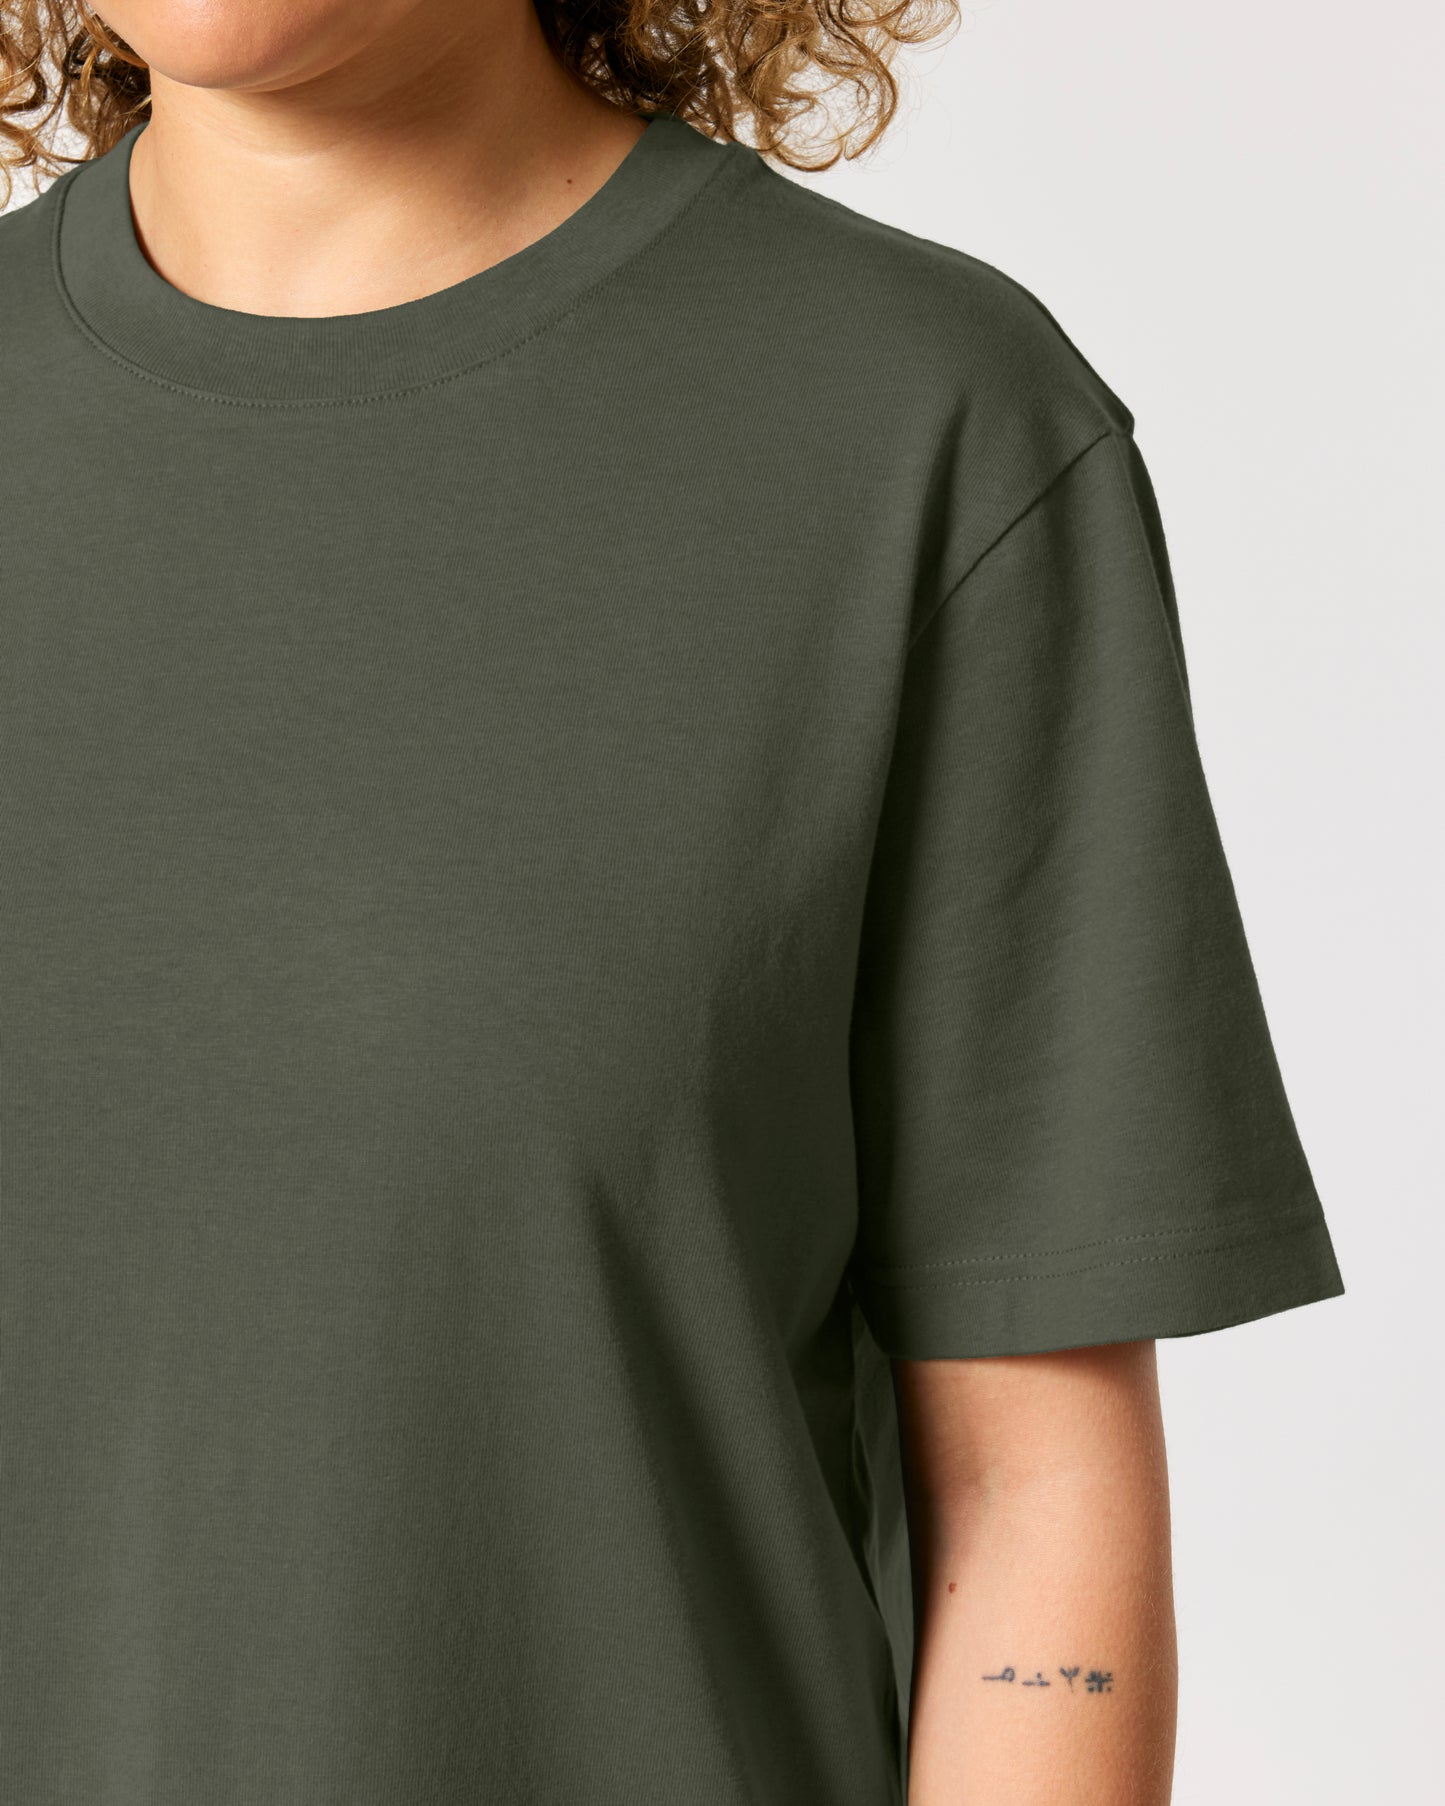 It Fits Swish - T-shirt unisexe coupe décontractée - Épais - Kaki